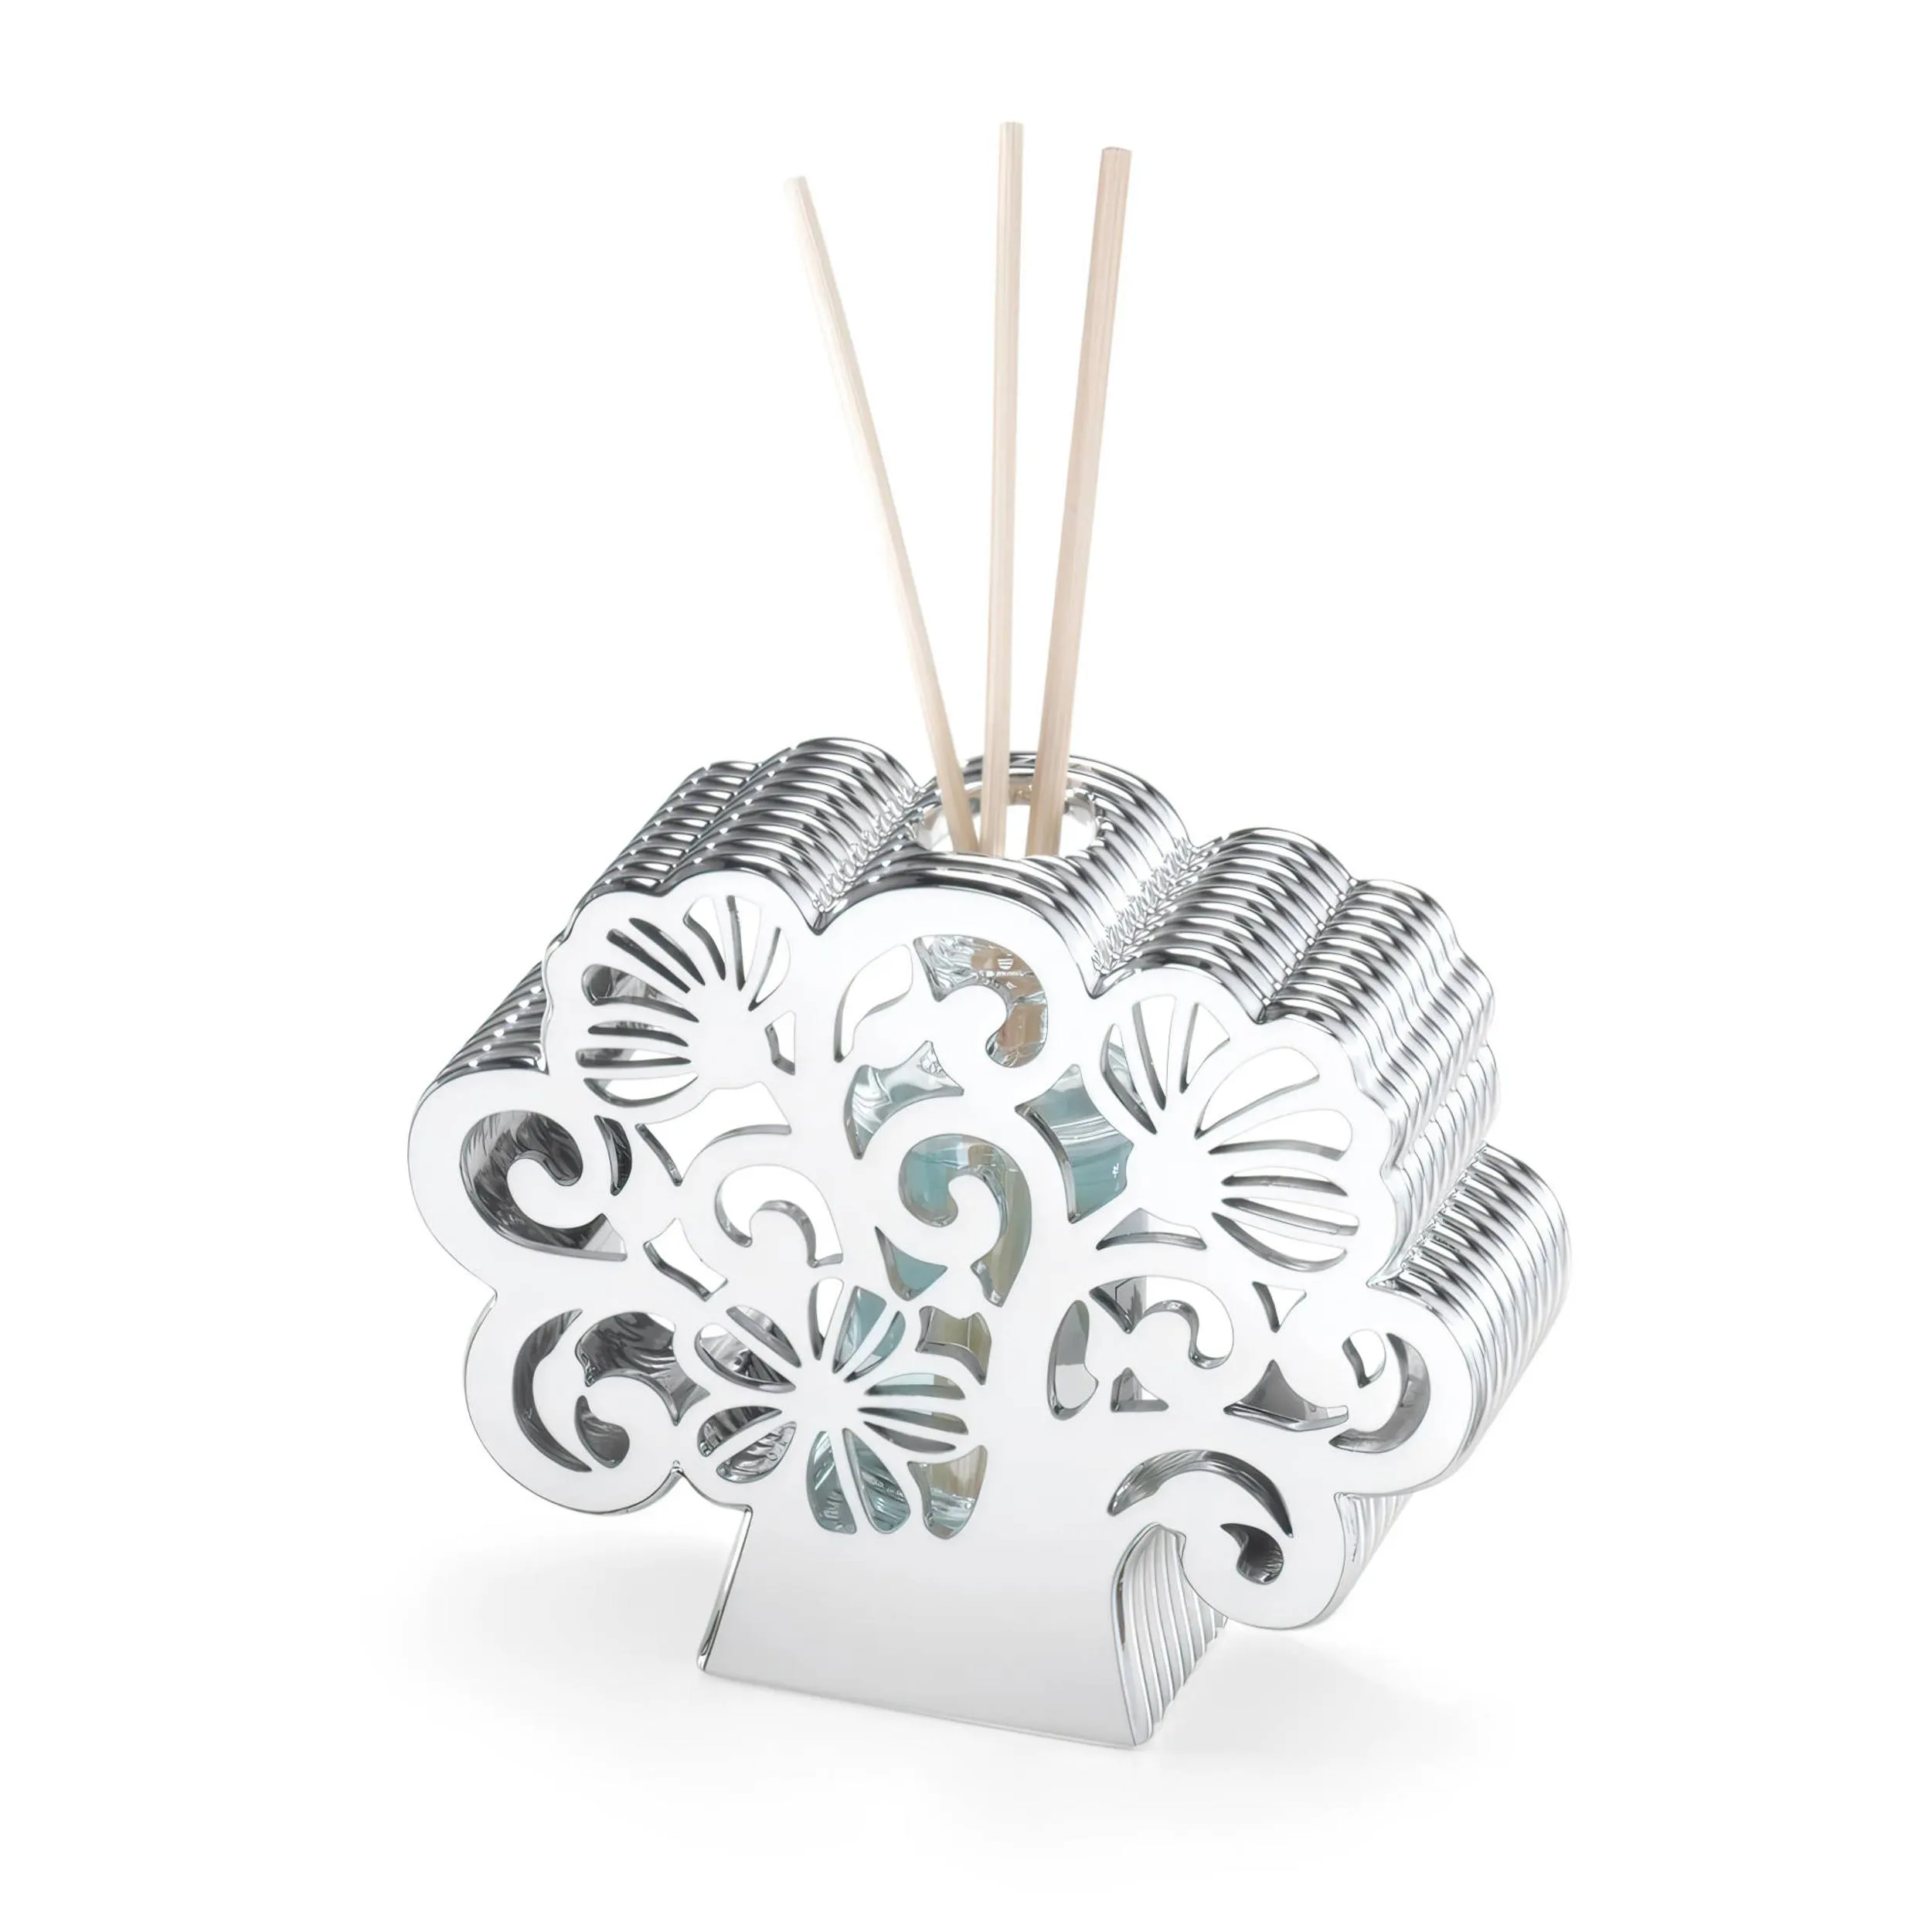 Profumatore bianco e argento ALBERO DELLA VITA in argento 10x12xh4,5 cm per comunione in scatola regalo , bomboniera